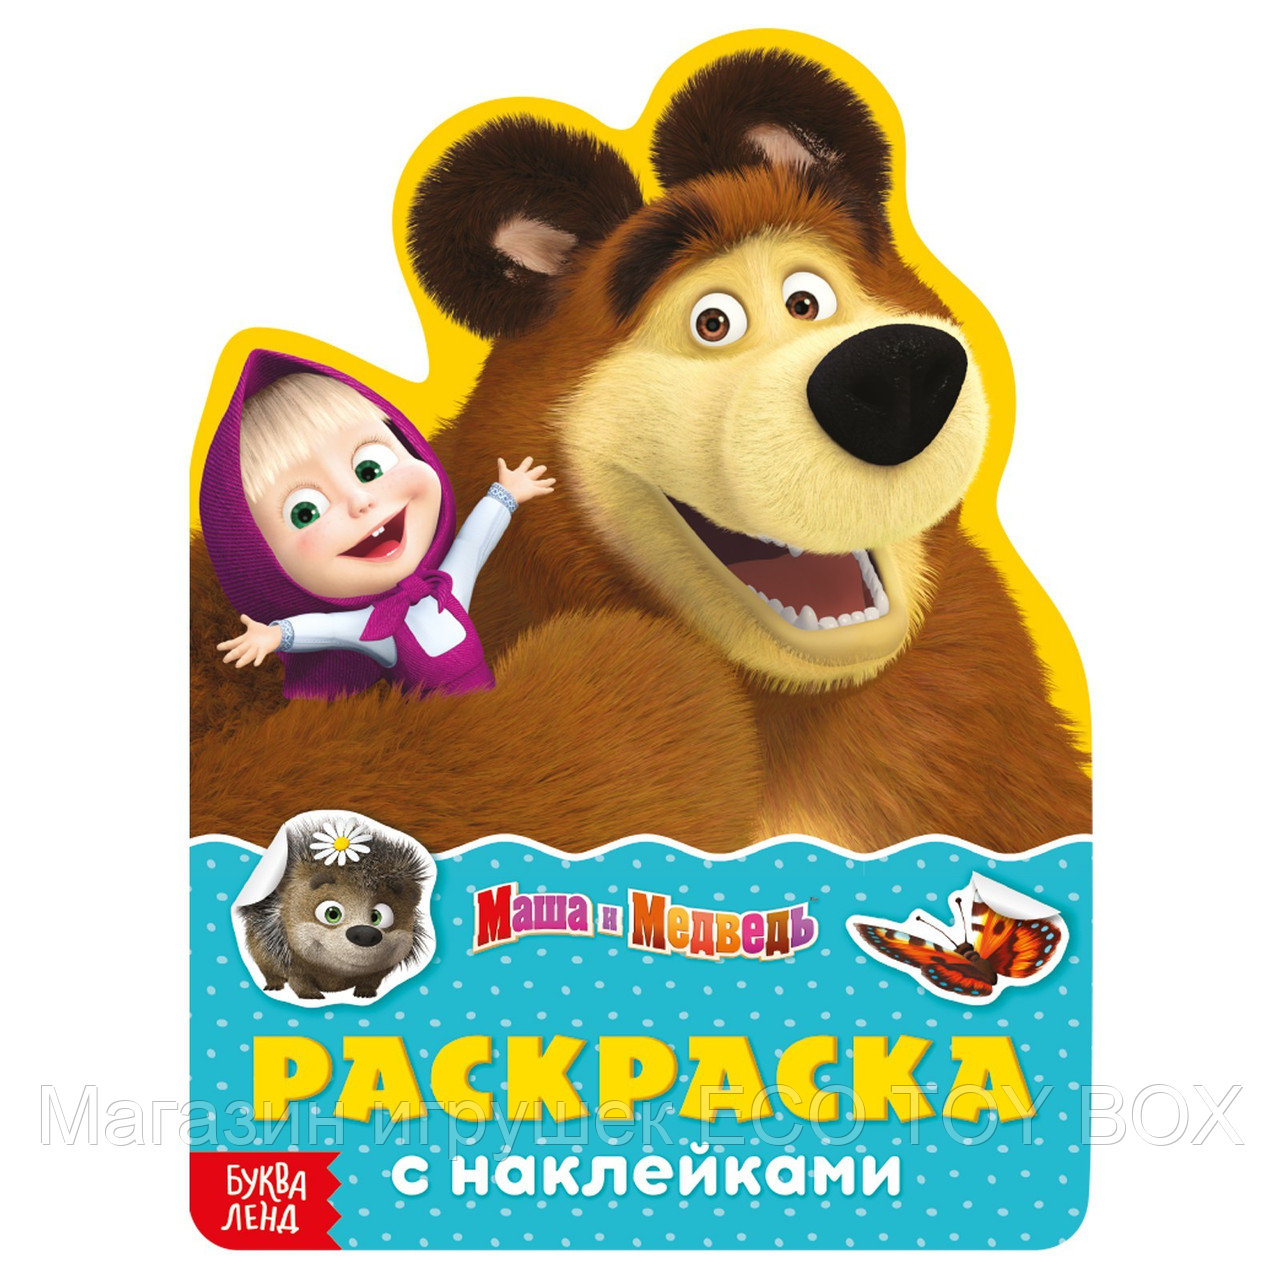 Раскраска с наклейками «Поиграй со мною», 12 стр., Маша и Медведь, фото 1